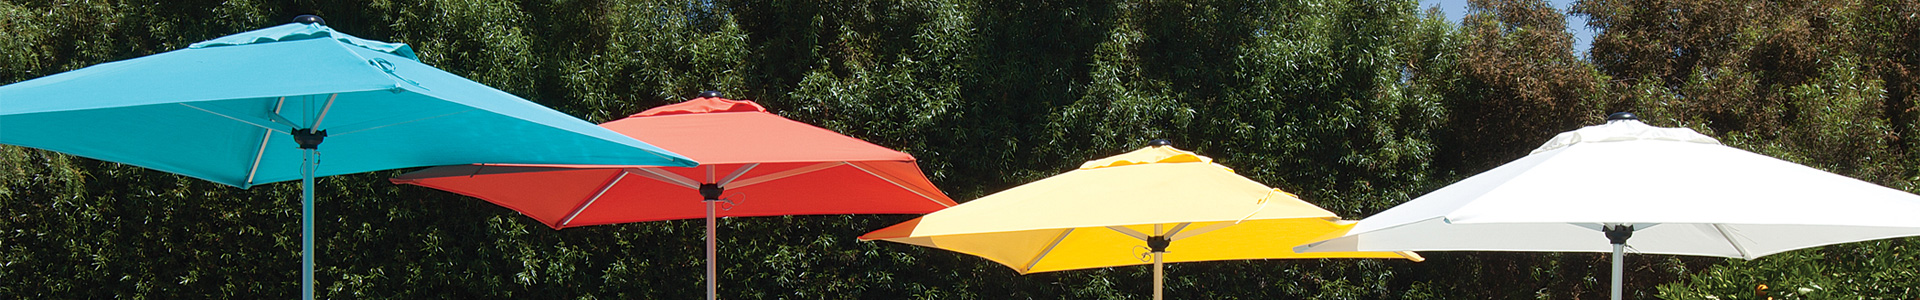 Button Tilt Market Umbrellas